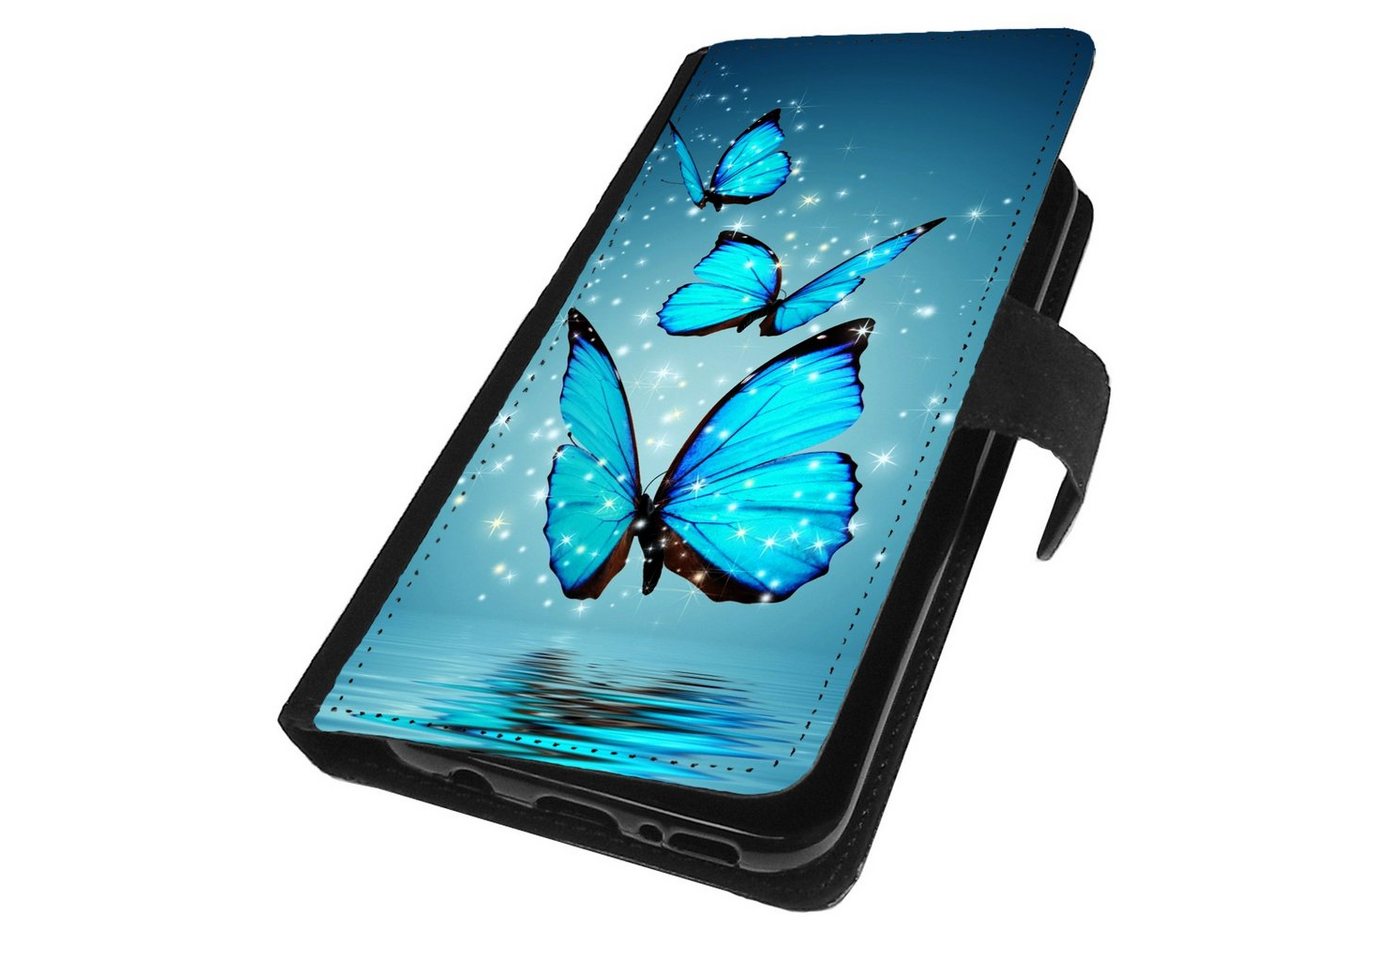 Traumhuelle Handyhülle Für Samsung Galaxy Note 10 / Note 10+ Plus Schutzhülle Motiv 4, Schmetterling Blau Handy Tasche Klapp Hülle Case Etui Cover Silikon von Traumhuelle